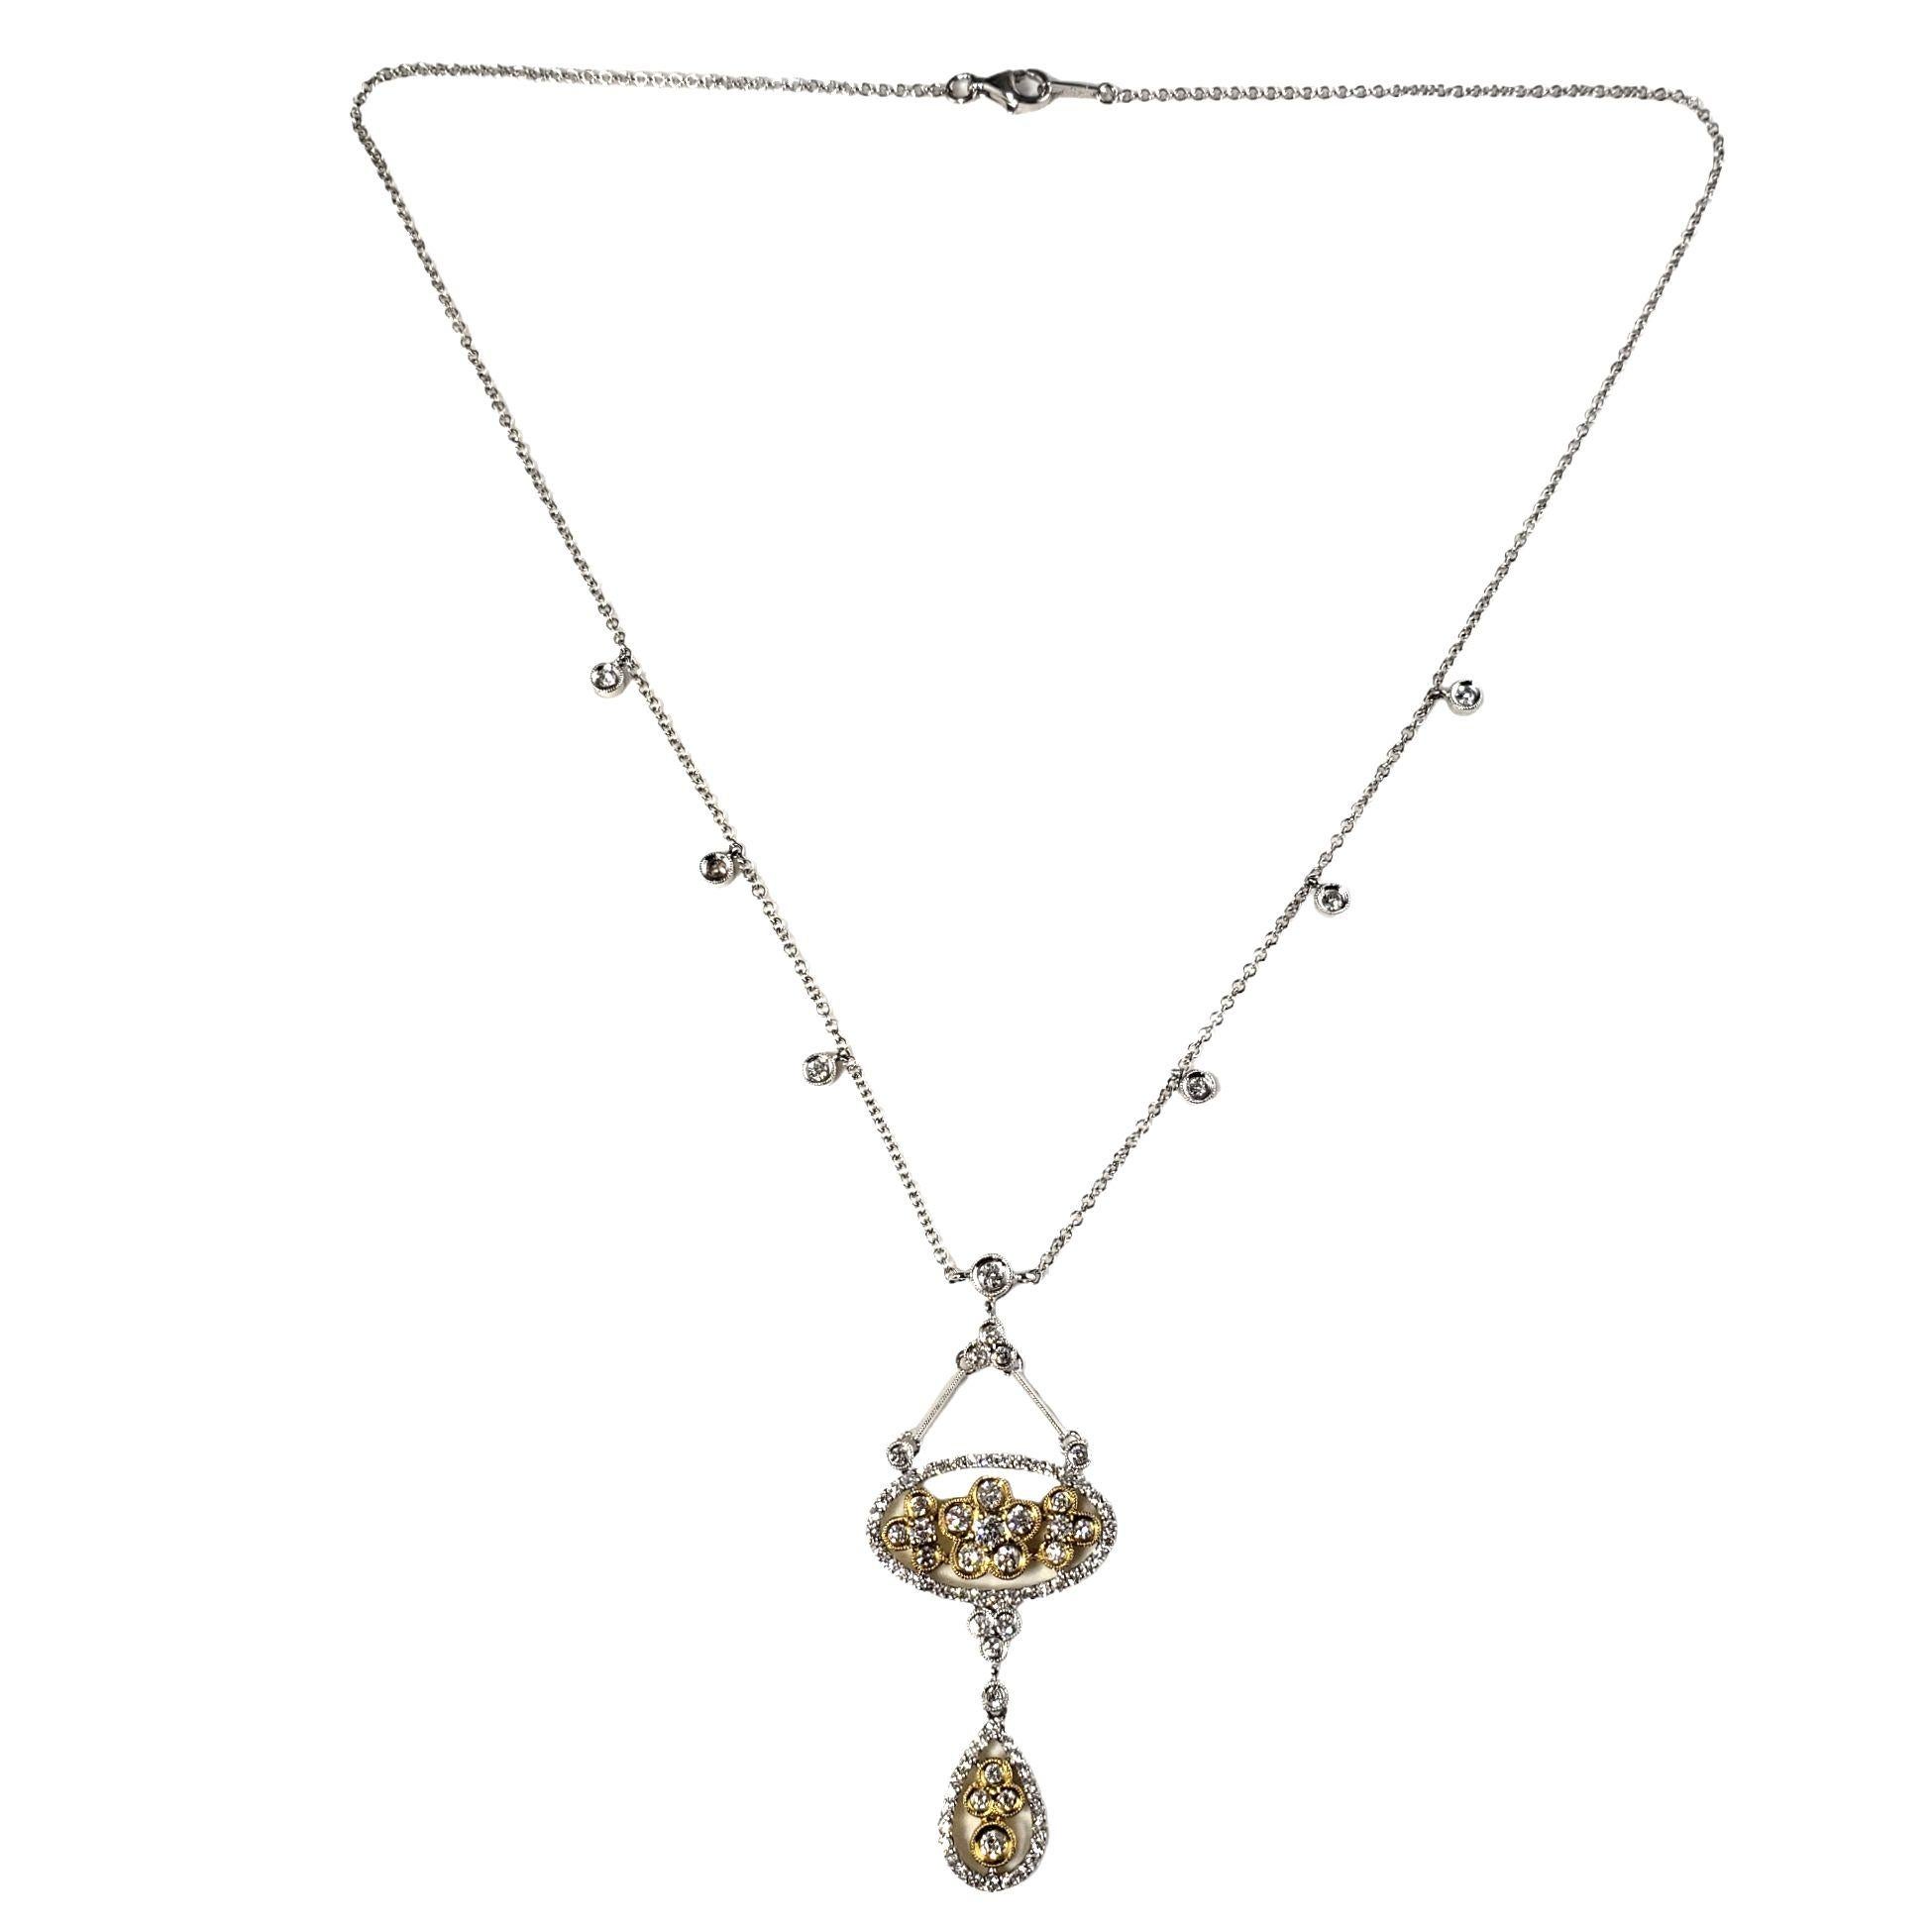 Vintage Collier avec pendentif en or bicolore 18 carats et diamants-...

Ce collier spectaculaire présente 94 diamants ronds de taille brillant, sertis dans de l'or blanc et jaune 18K magnifiquement détaillé.

Poids total approximatif des diamants :